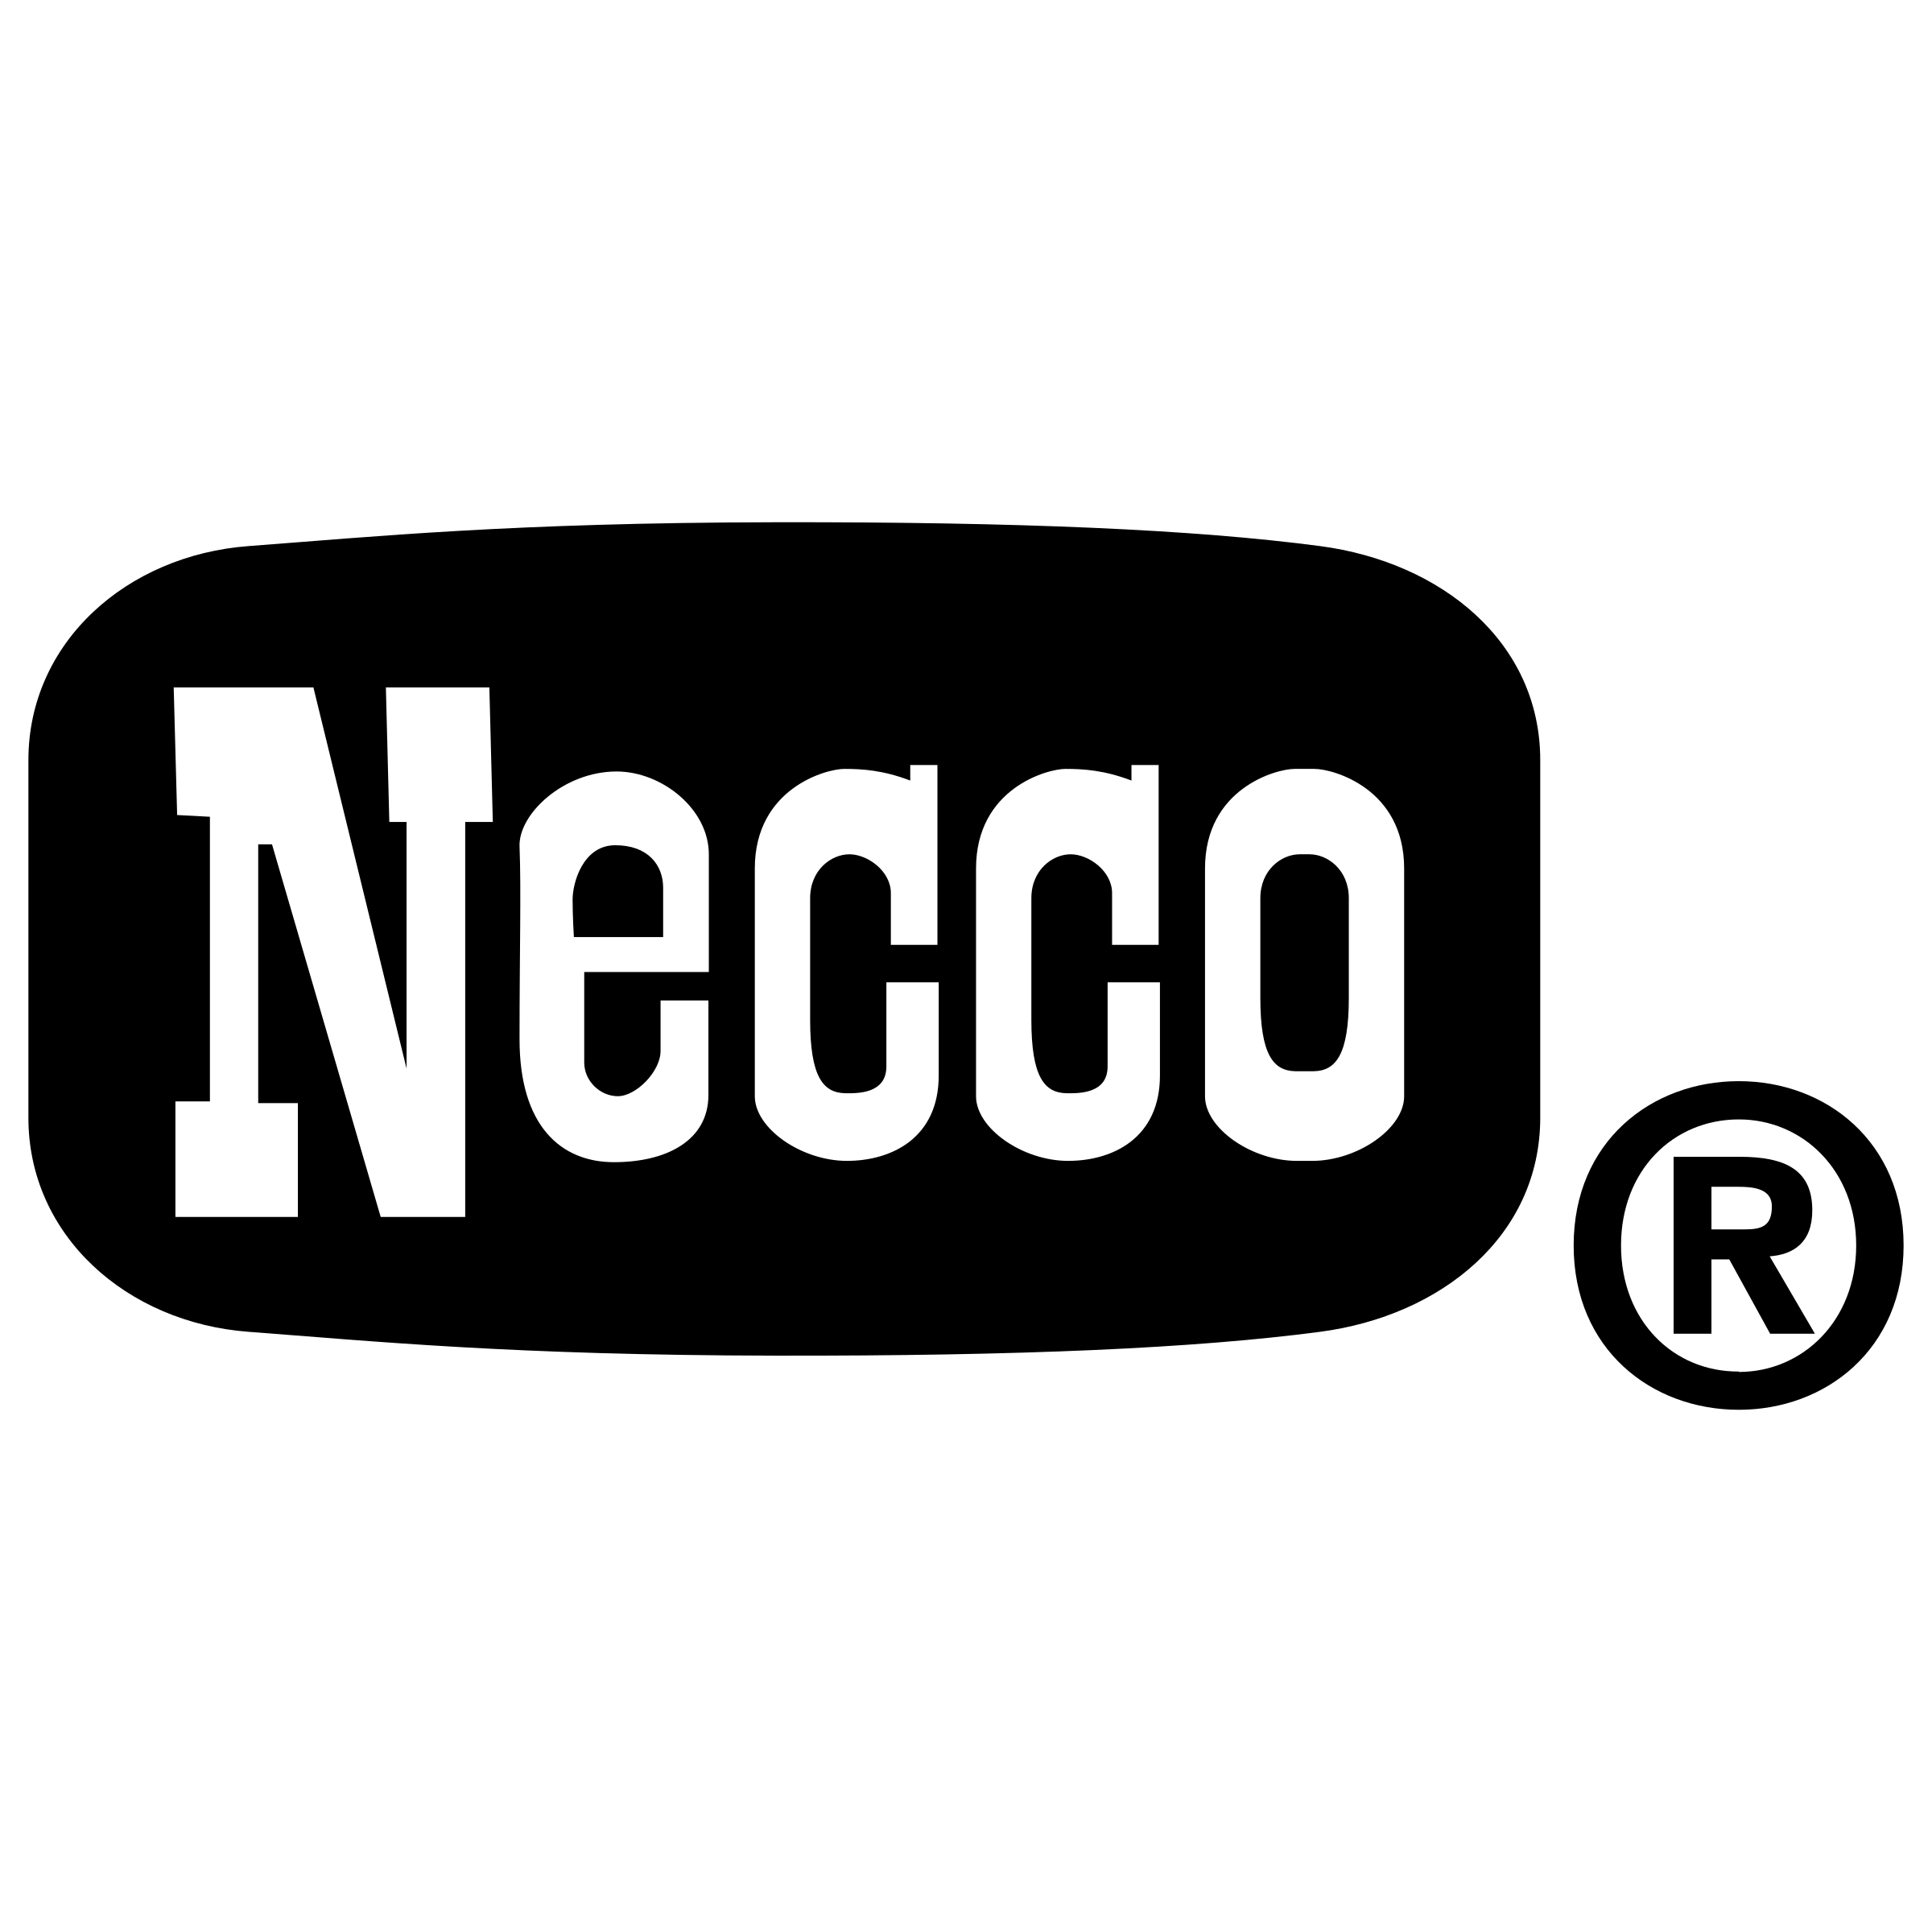 Necco Logo - Necco Logo PNG Transparent & SVG Vector - Freebie Supply